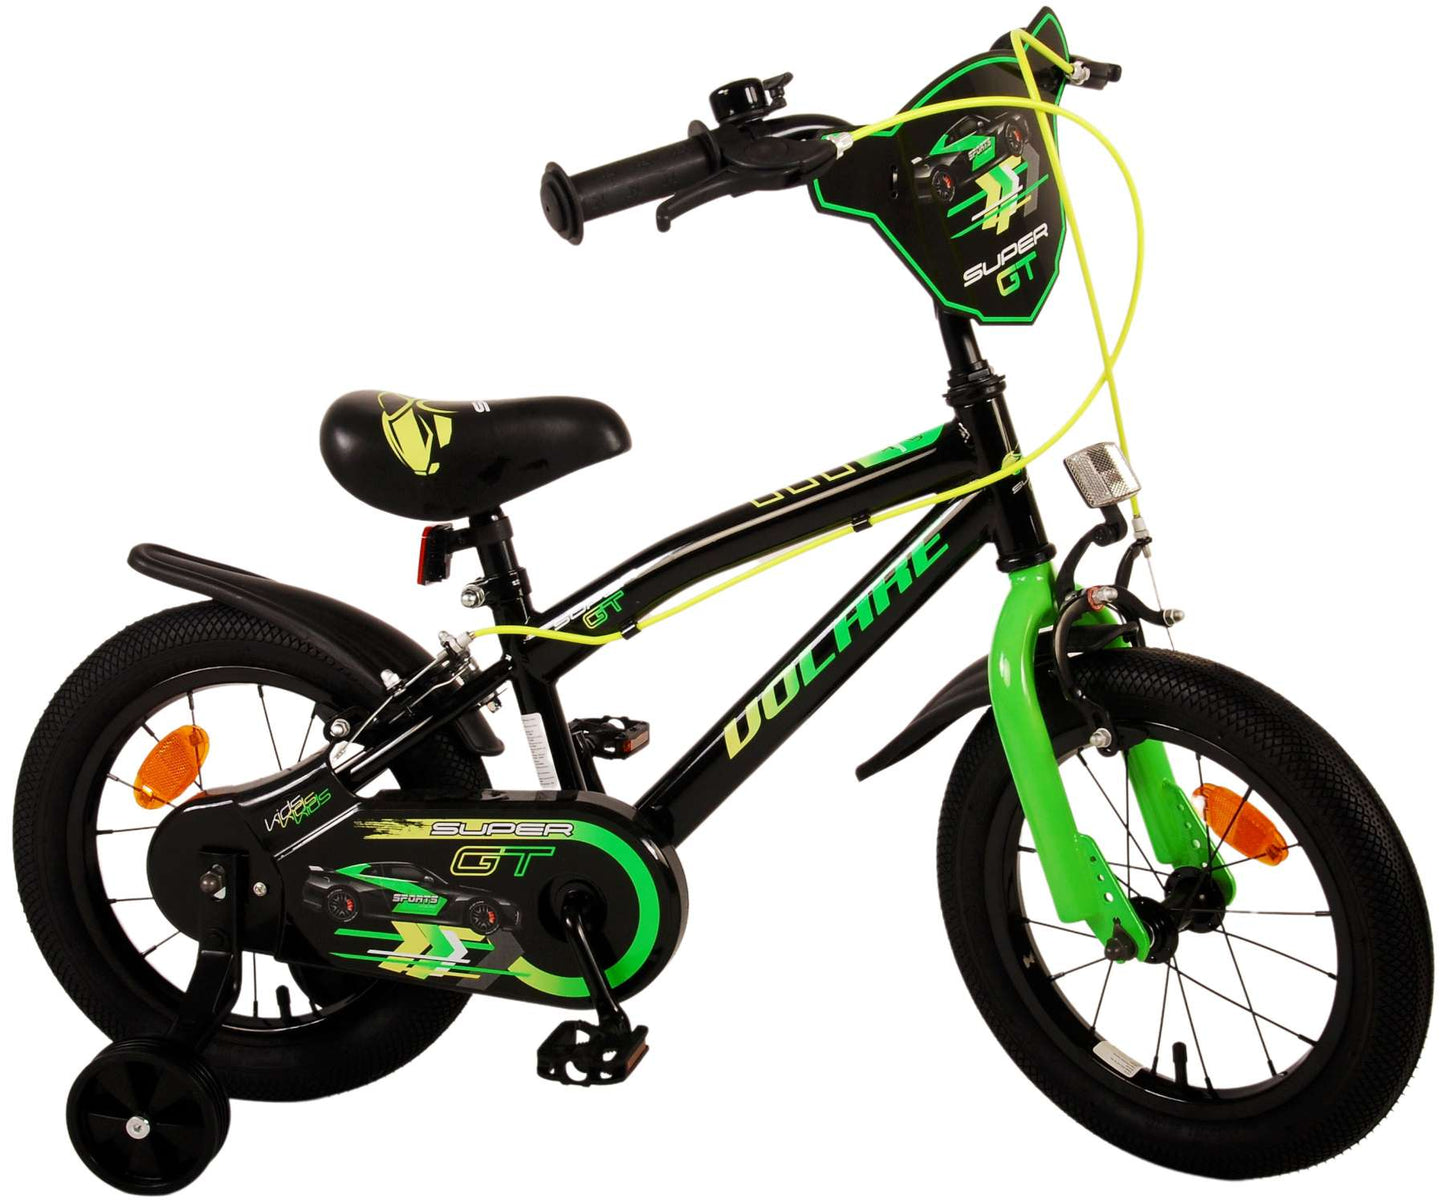 Bike para niños Volare Super GT - Niños - 14 pulgadas - Verde - Dos frenos de mano